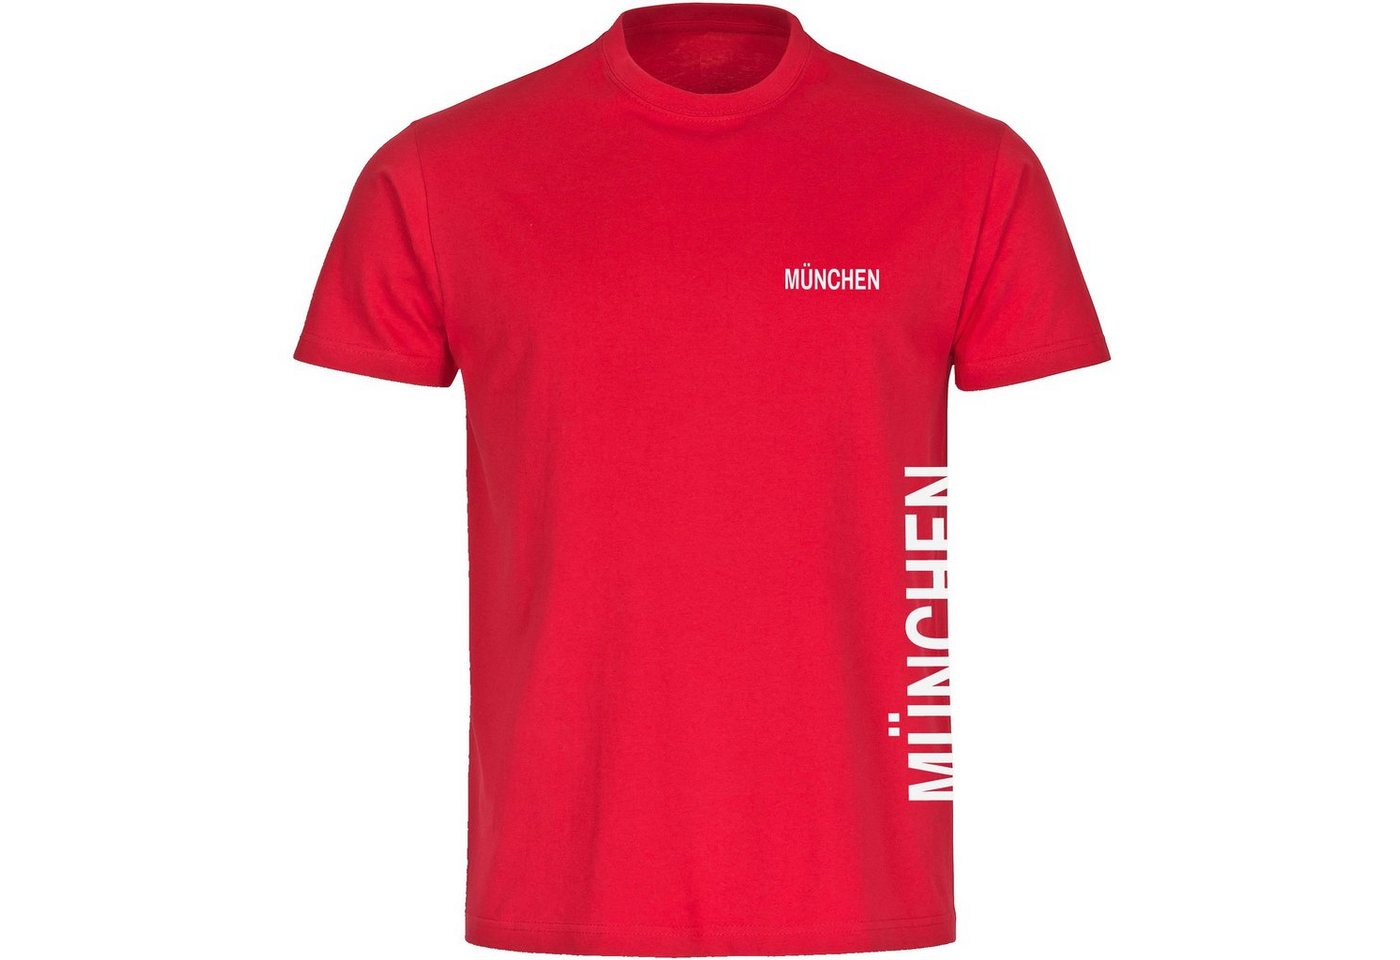 multifanshop T-Shirt Herren München rot - Brust & Seite - Männer von multifanshop